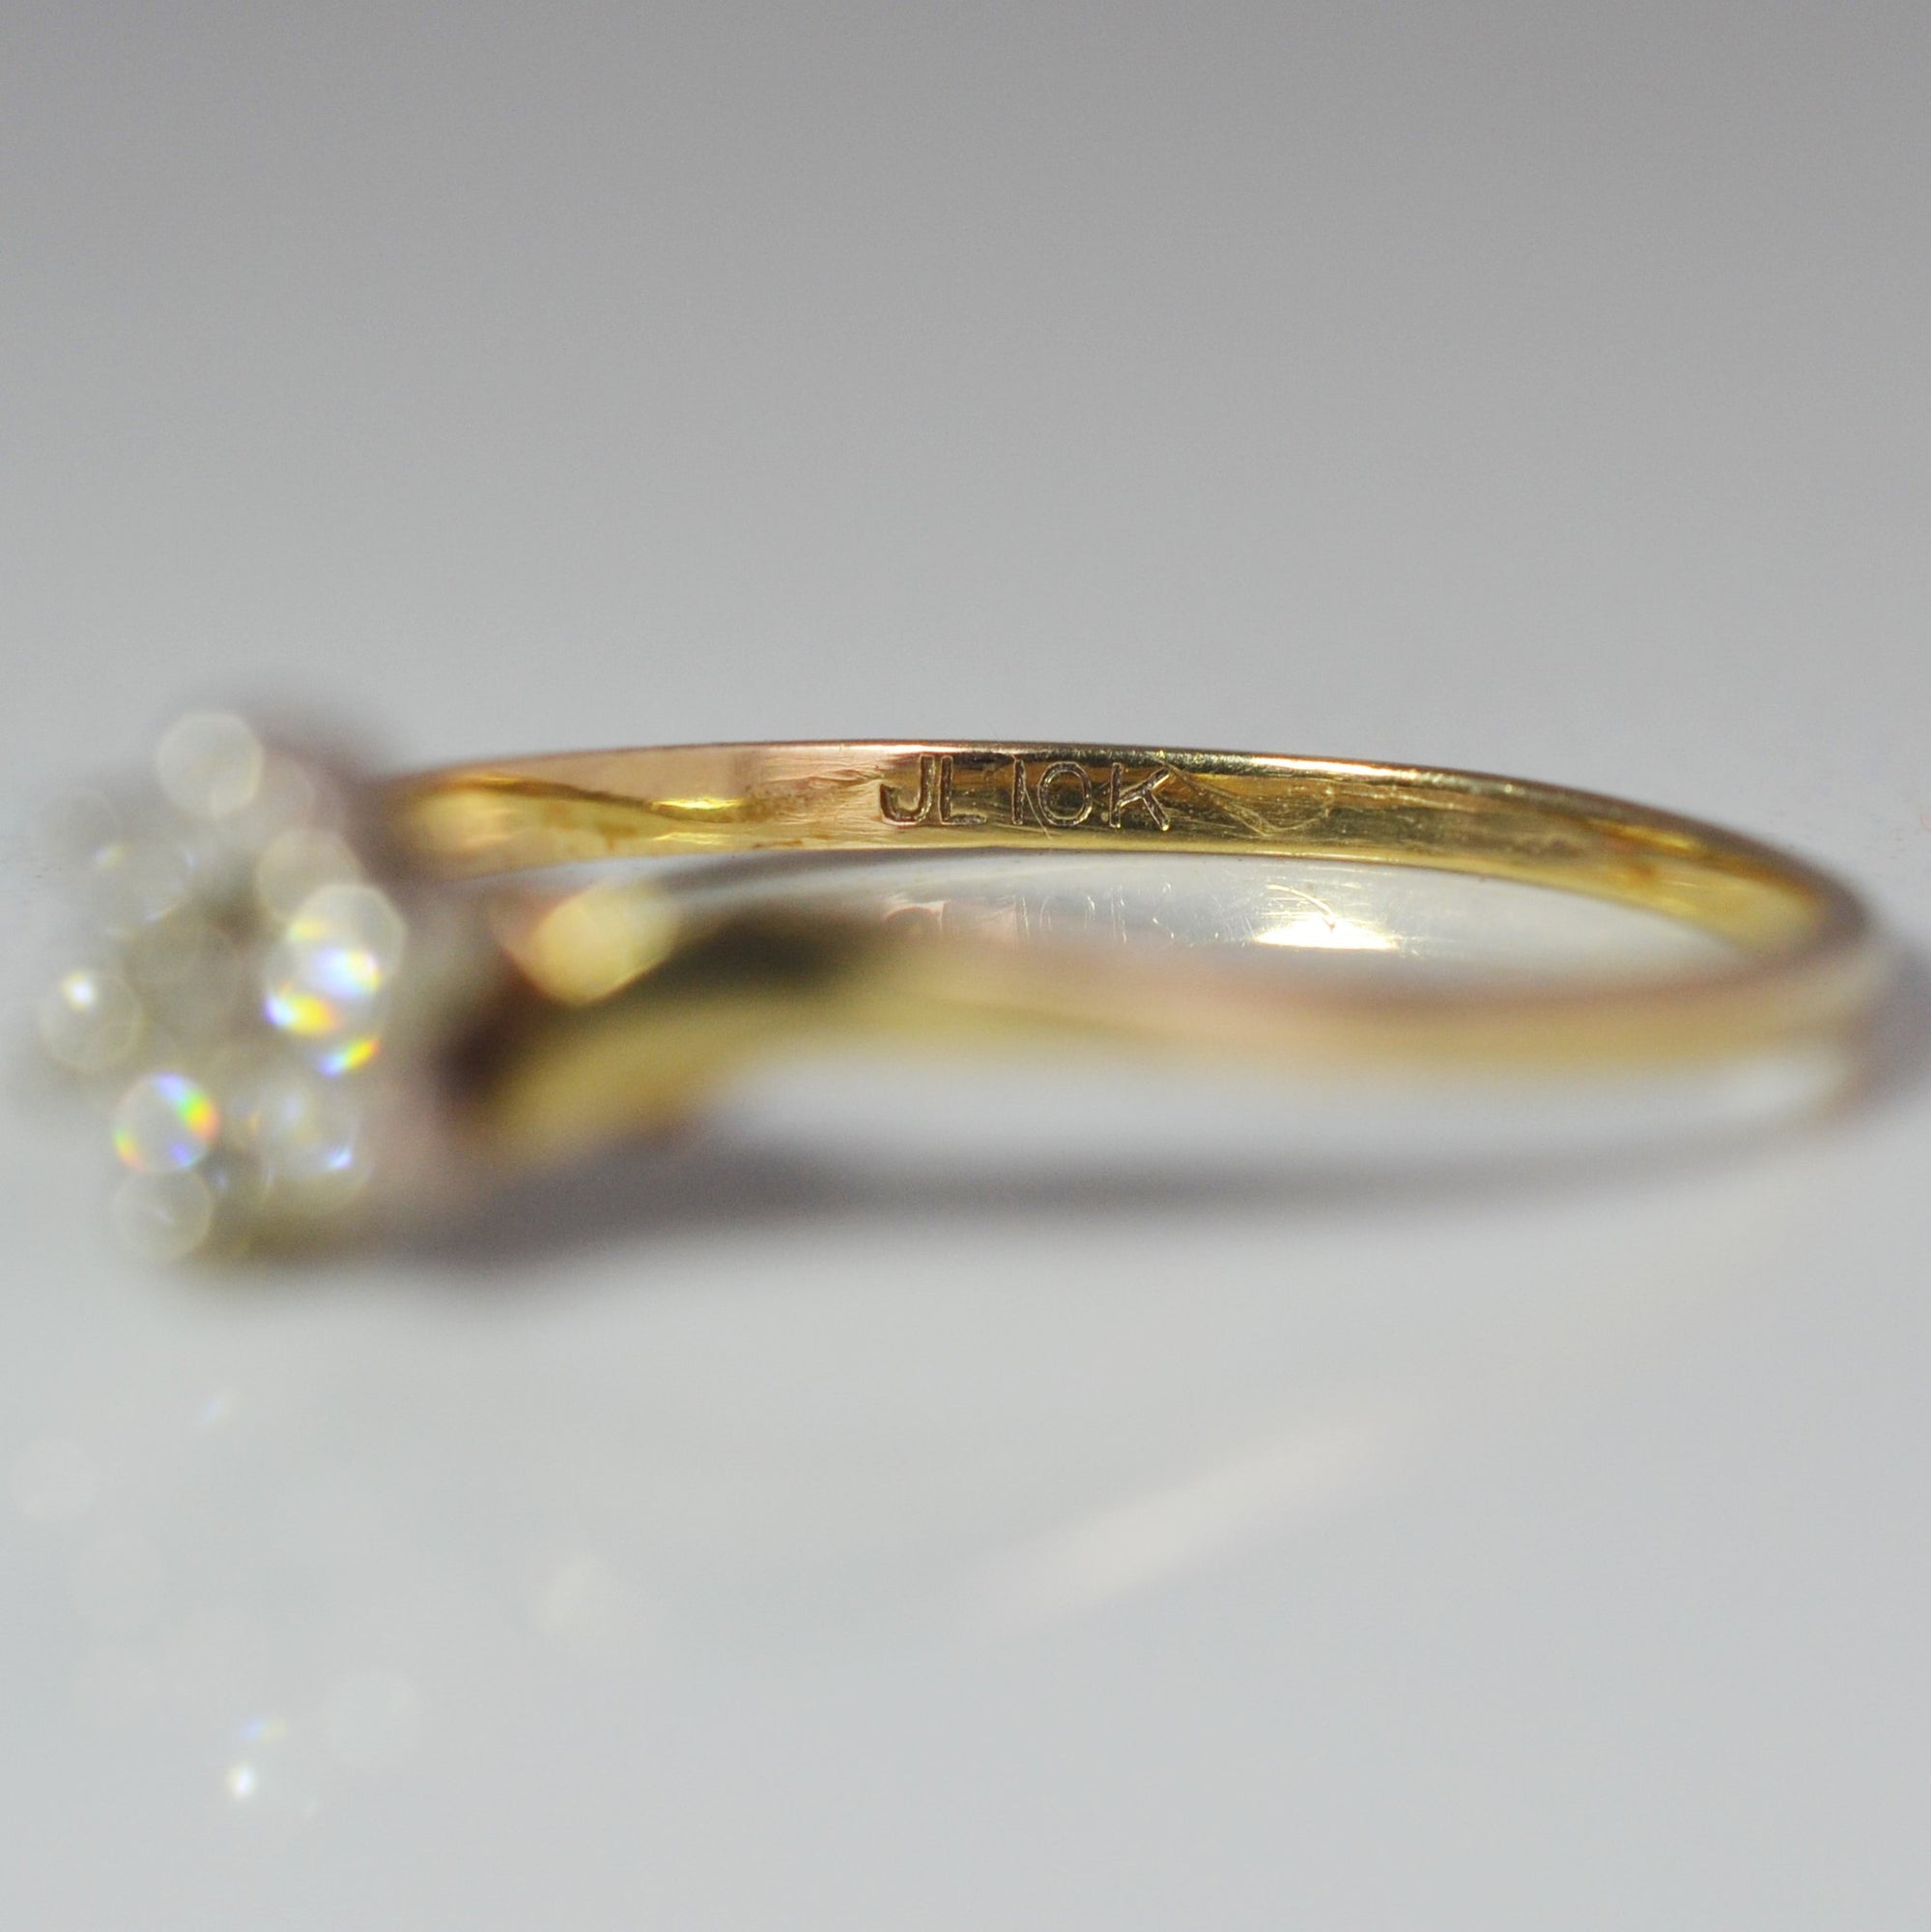 Petite Diamond Flower Ring | 0.07 ct, SZ 6.5 |